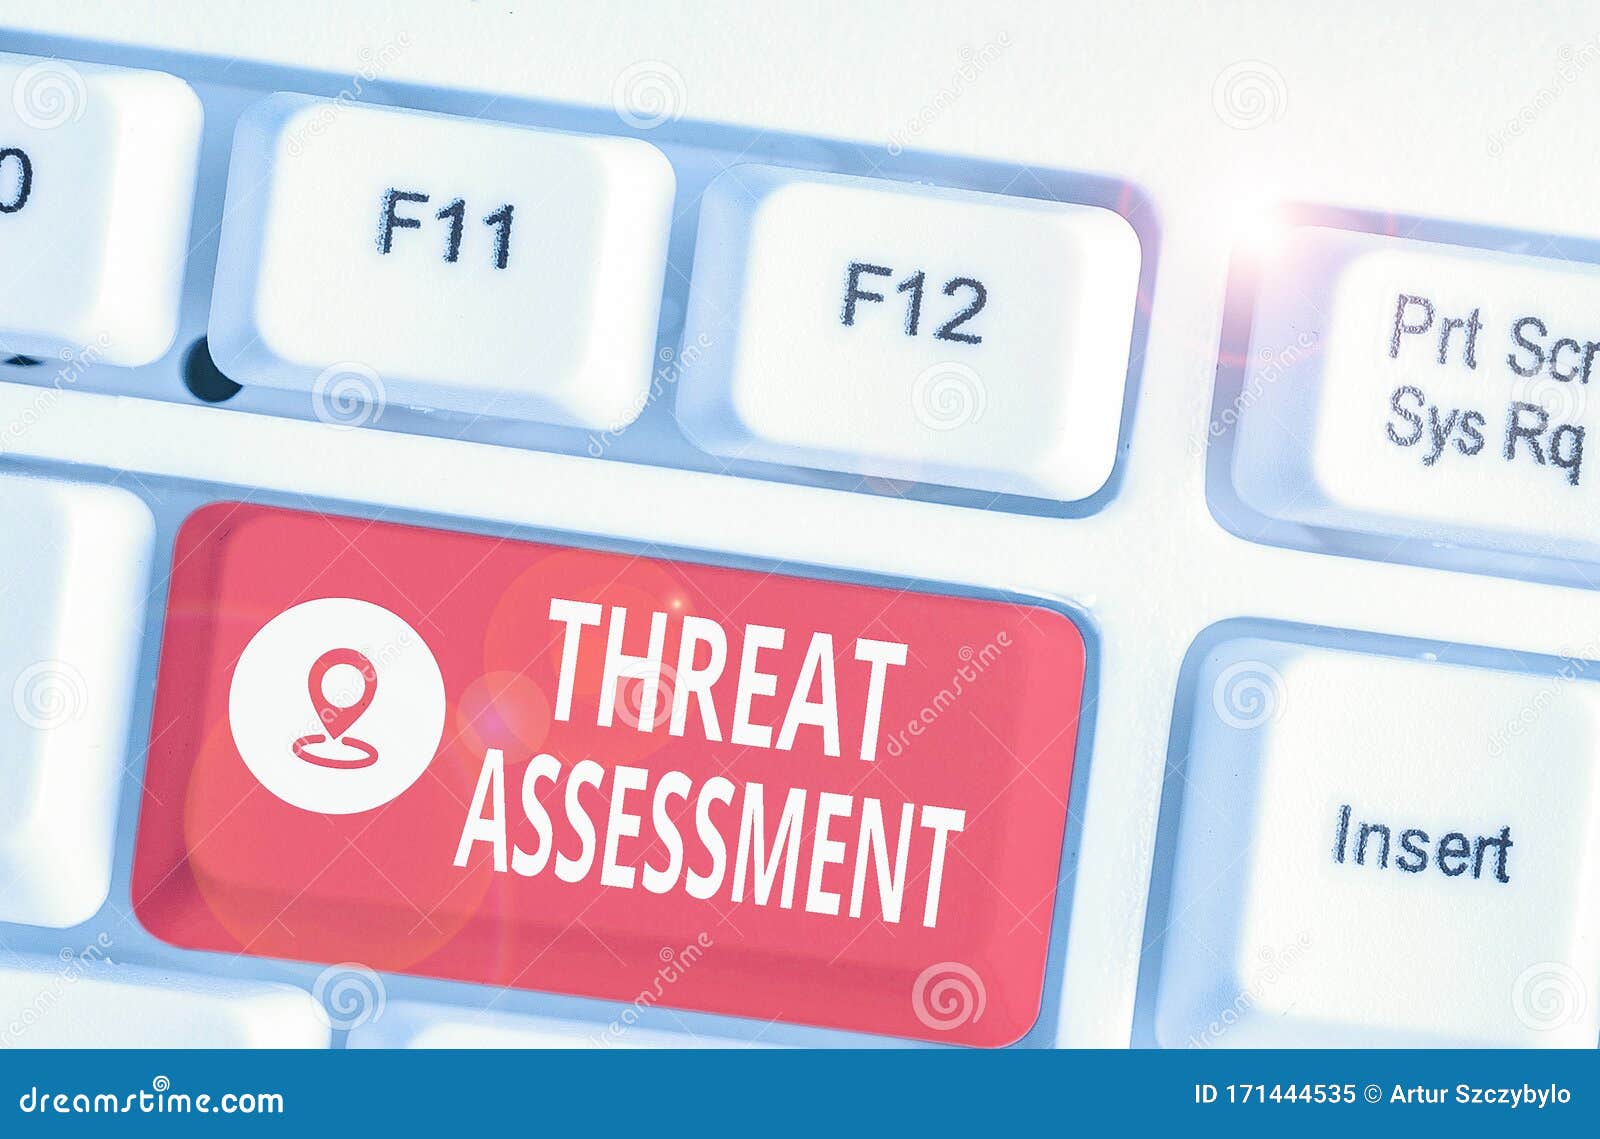 Prt Threat Assessment